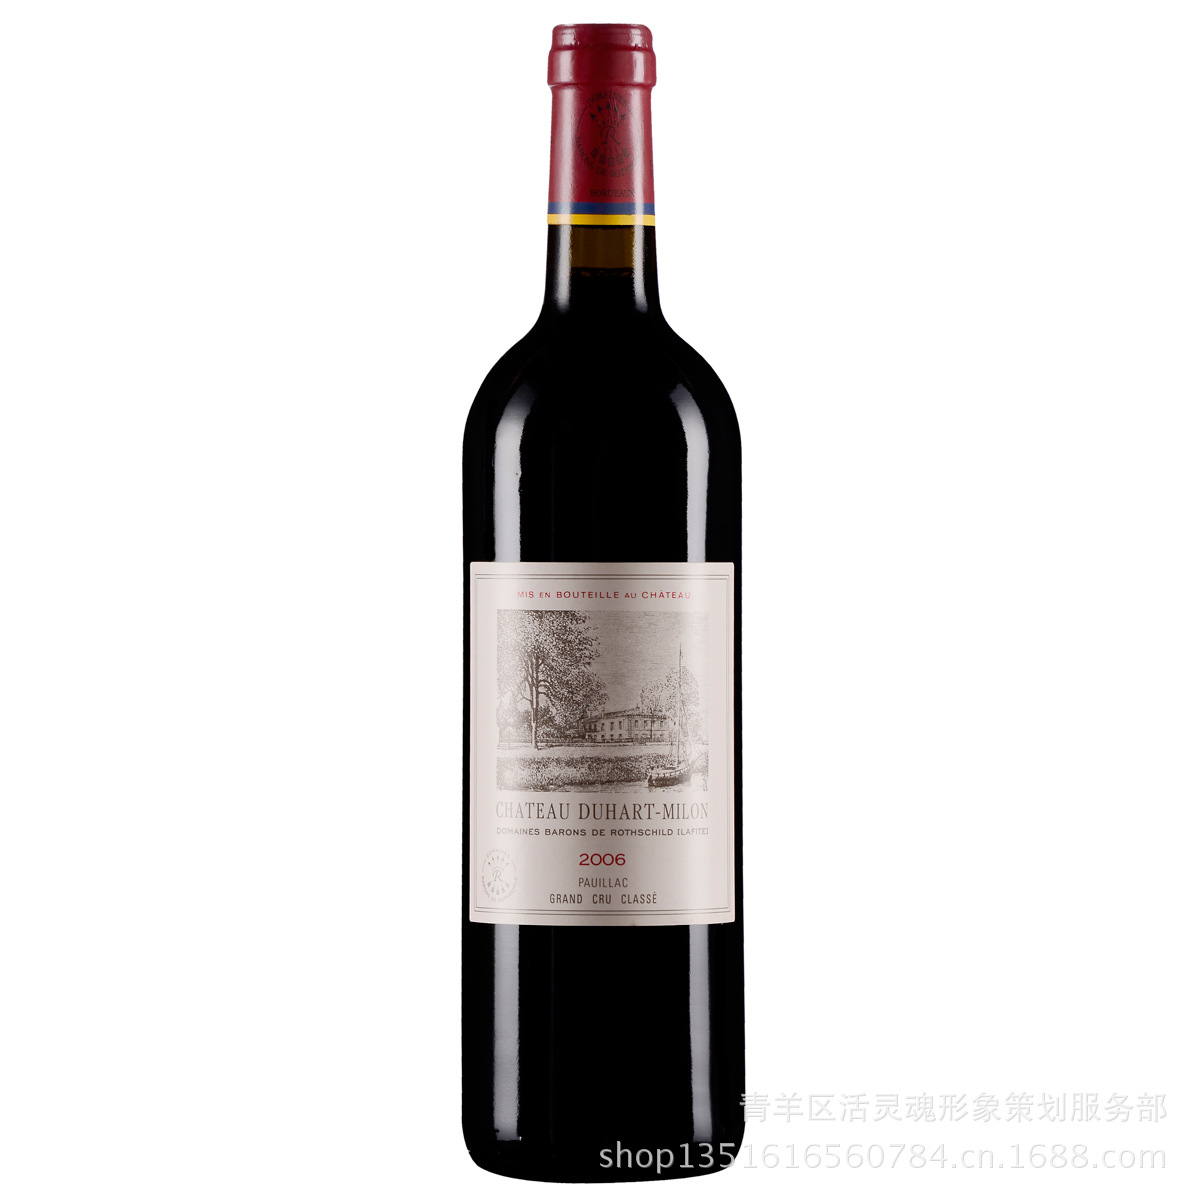 供应法国拉菲传说波尔多干红葡萄酒2010 Sag